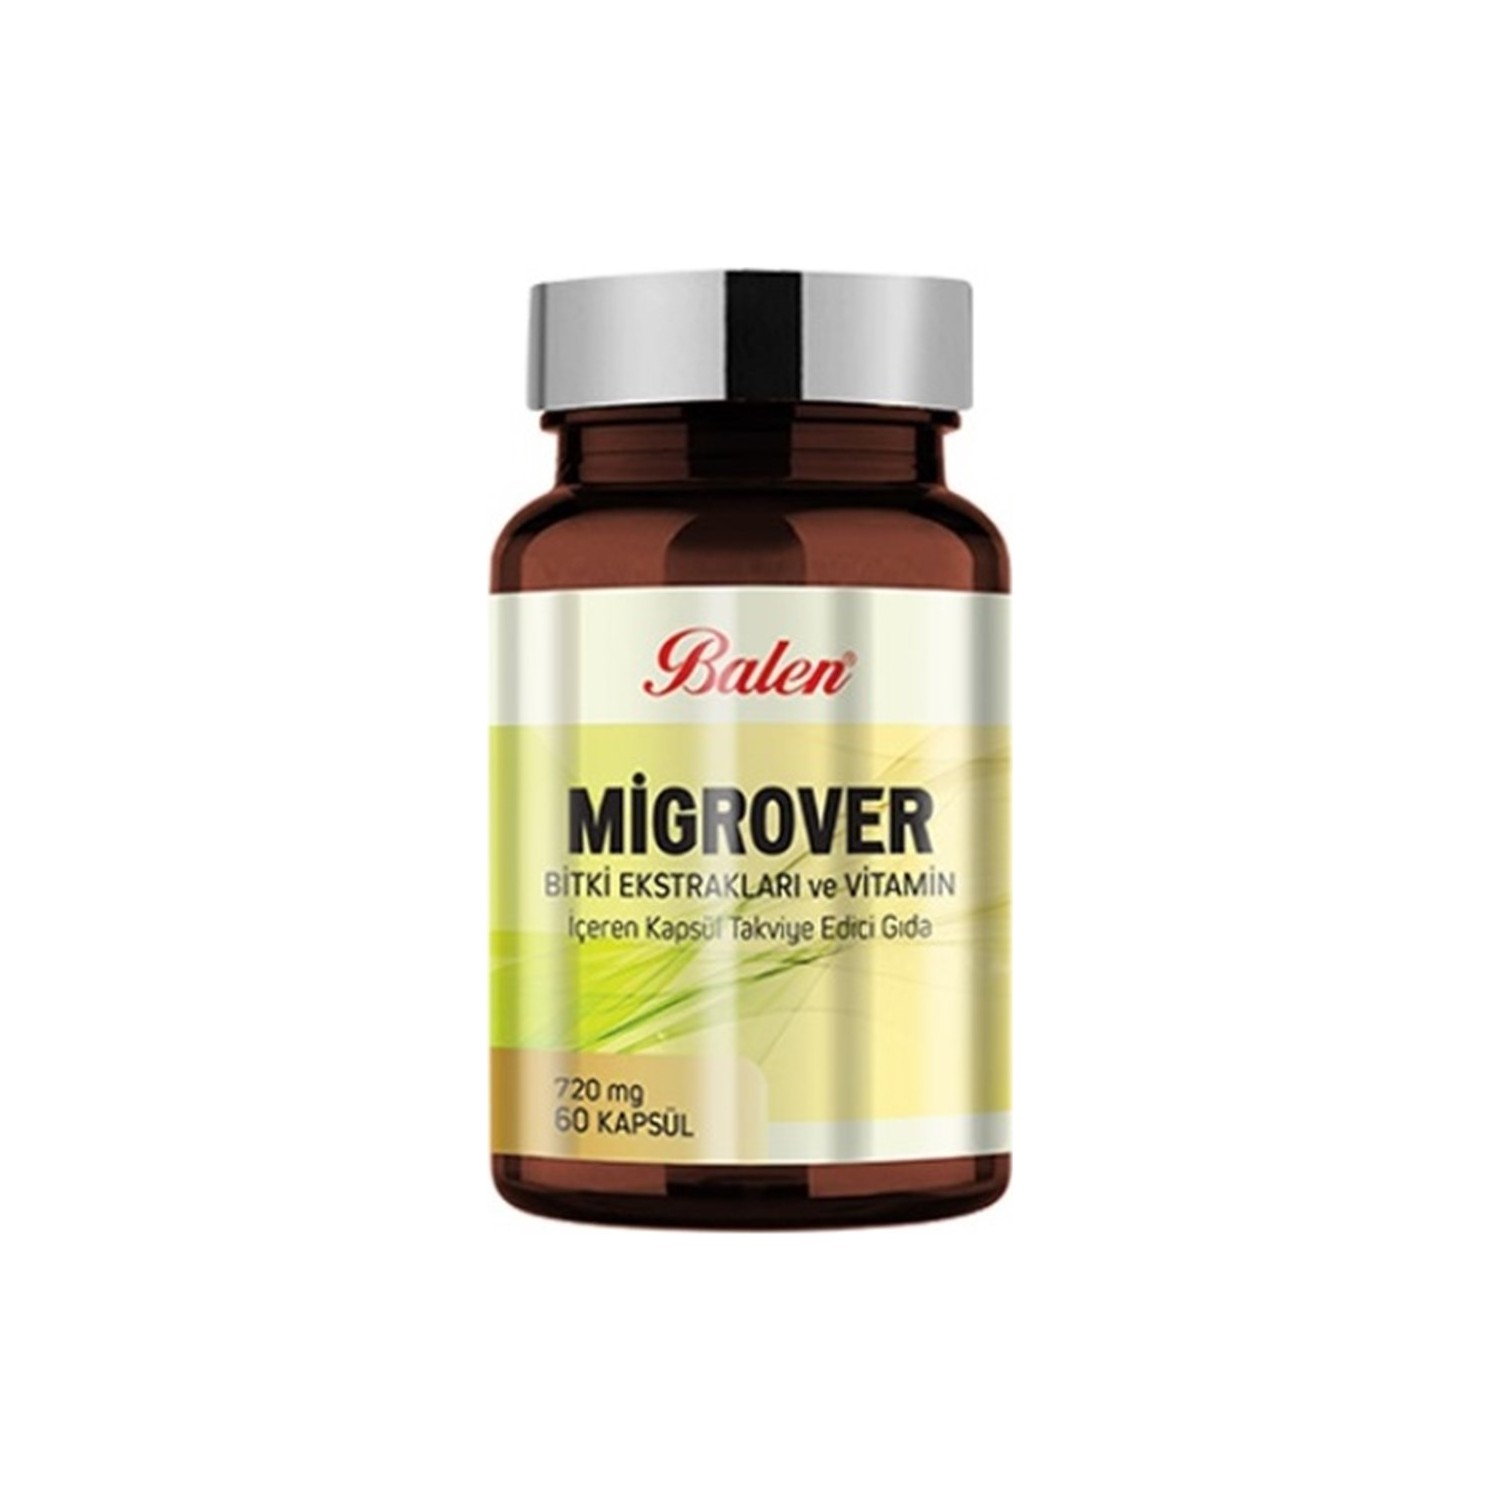 Капсулы Balen Migrover, содержащие растительные экстракты и витамины, 60 капсул, 720 мг, 3 штуки пищевая добавка balen migrover с растительными экстрактами и витаминами 720 мг 3 упаковки по 60 капсул